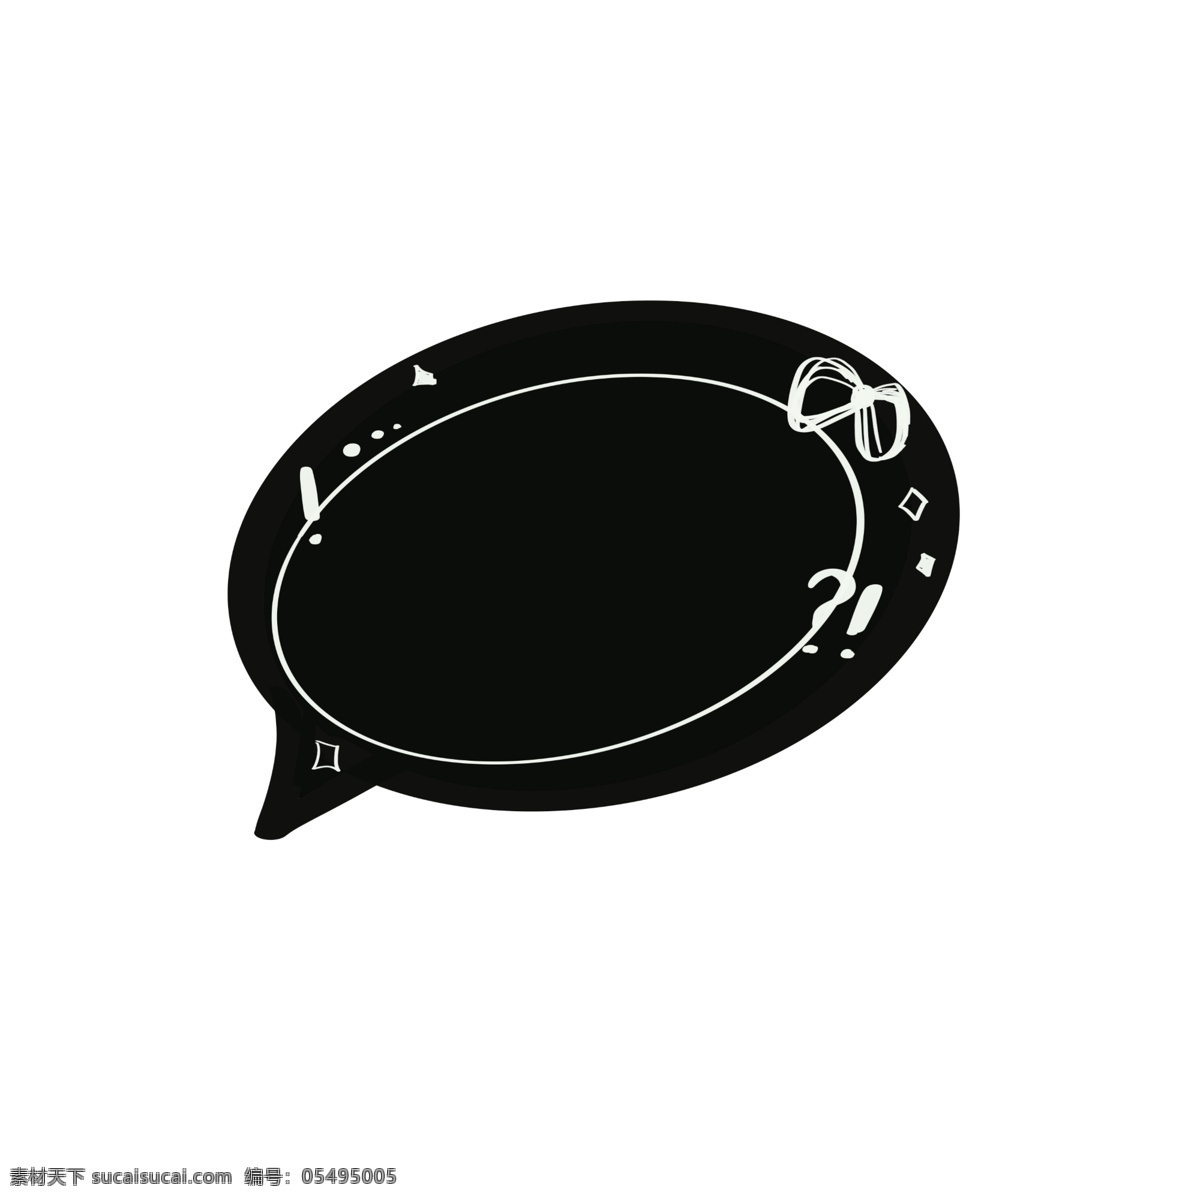 简单 对话框 手绘 卡通 黑色 可爱 对话款 简约 框 蝴蝶结 手绘图形 简单手绘 对话框图形